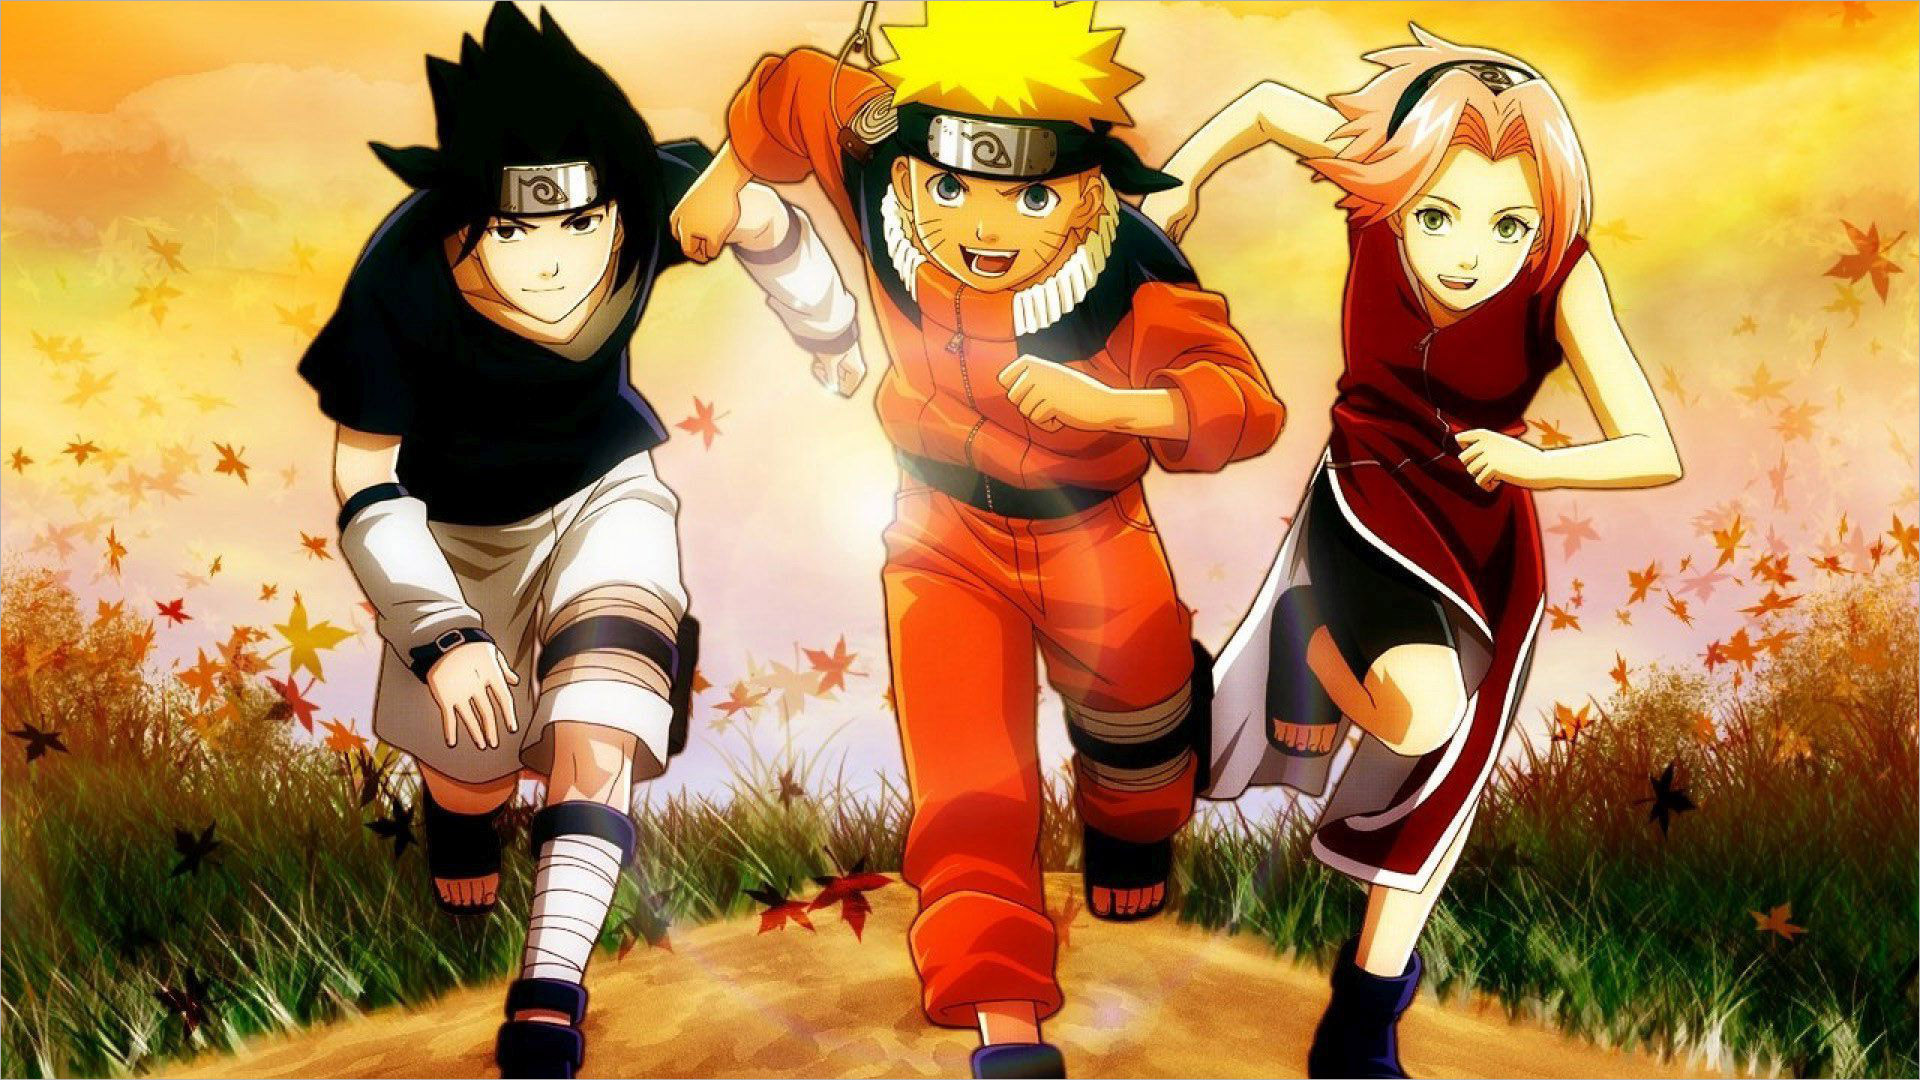 Naruto: Naruto luôn là một thế giới đầy kỳ tích và phiêu lưu. Những cuộc hành trình của Naruto cùng với những người bạn là một trong những trải nghiệm tuyệt vời nhất. Hãy đón xem hình ảnh liên quan để trở lại với thế giới Naruto đầy màu sắc.